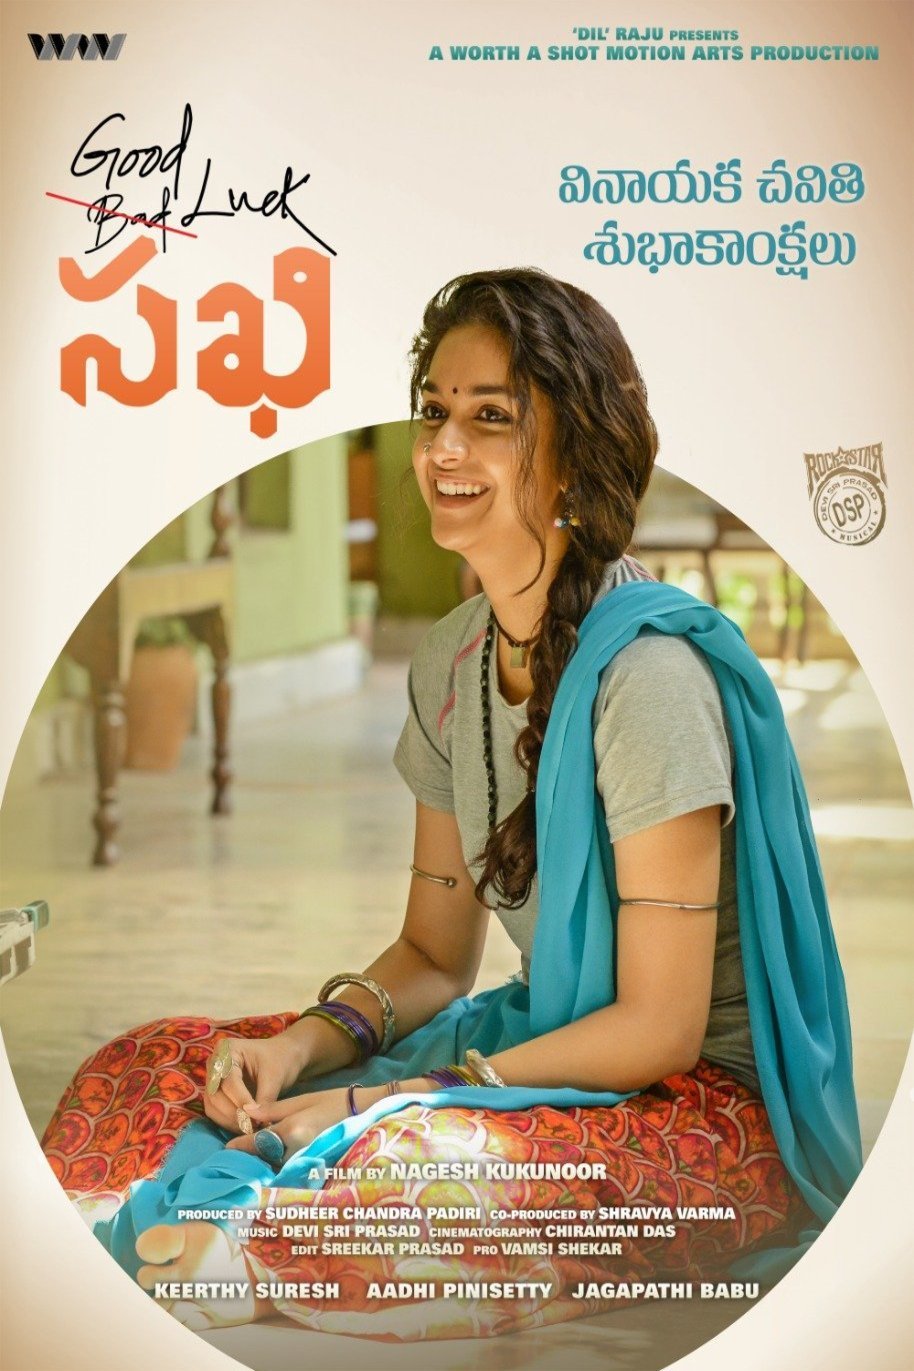 Telugu poster of the movie Good Luck Sakhi